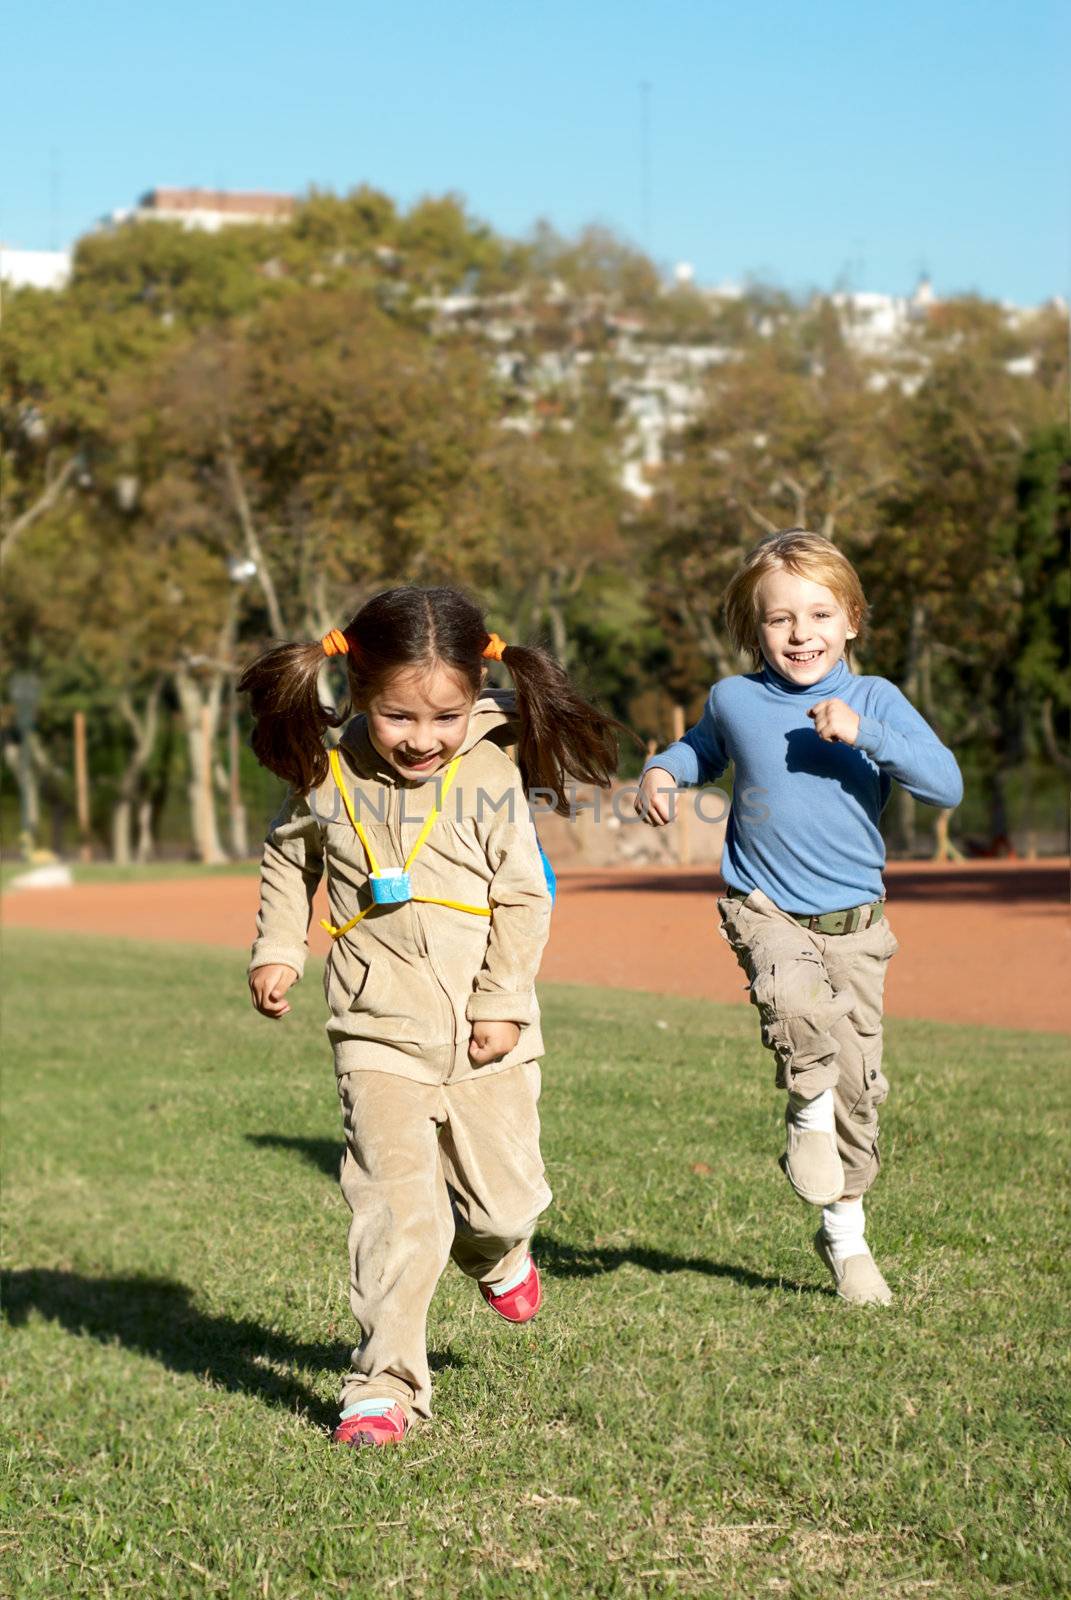 Children running in park by Anpet2000